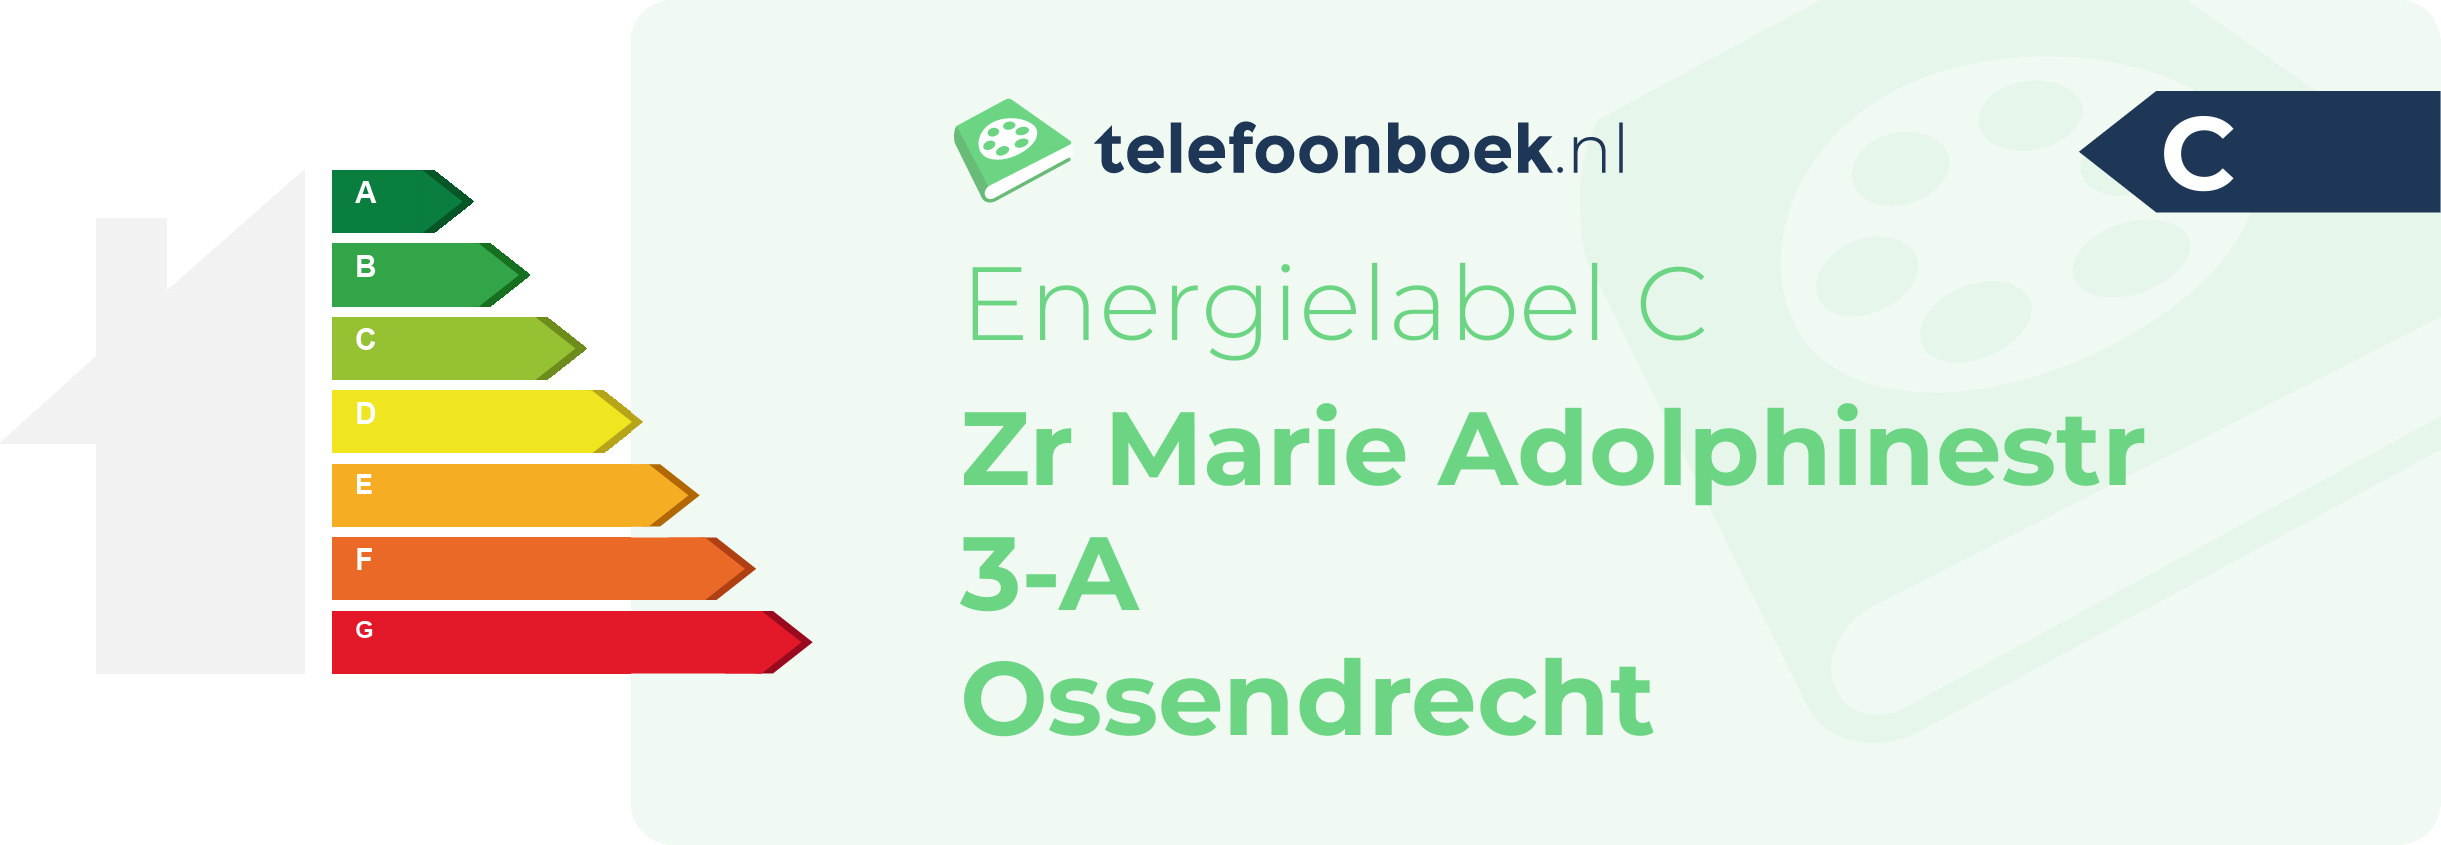 Energielabel Zr Marie Adolphinestr 3-A Ossendrecht